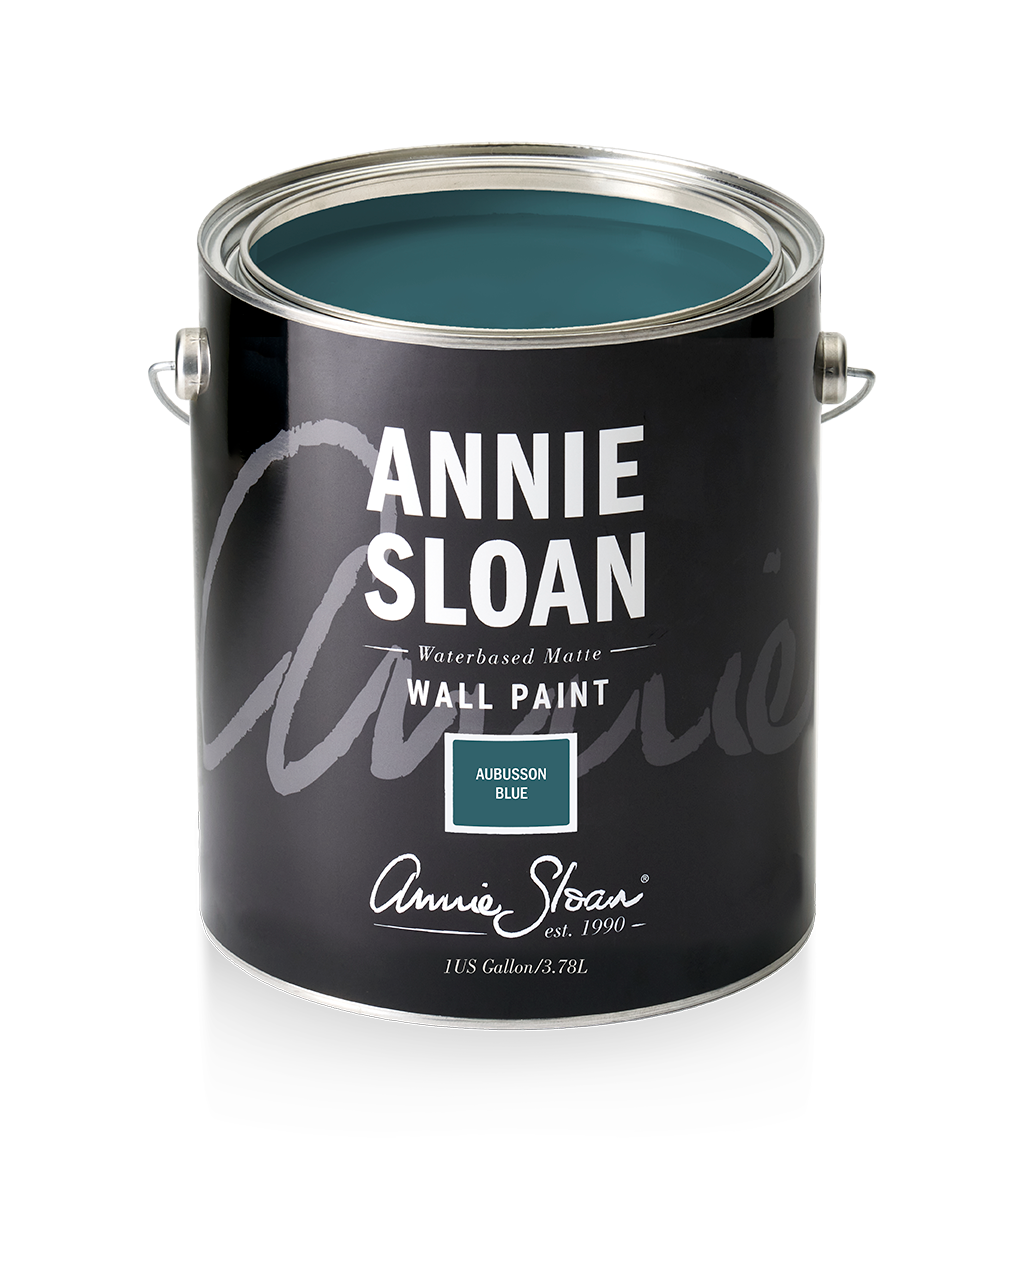 Annie Sloan Wall Paint Aubusson Blue, 1 Gallon